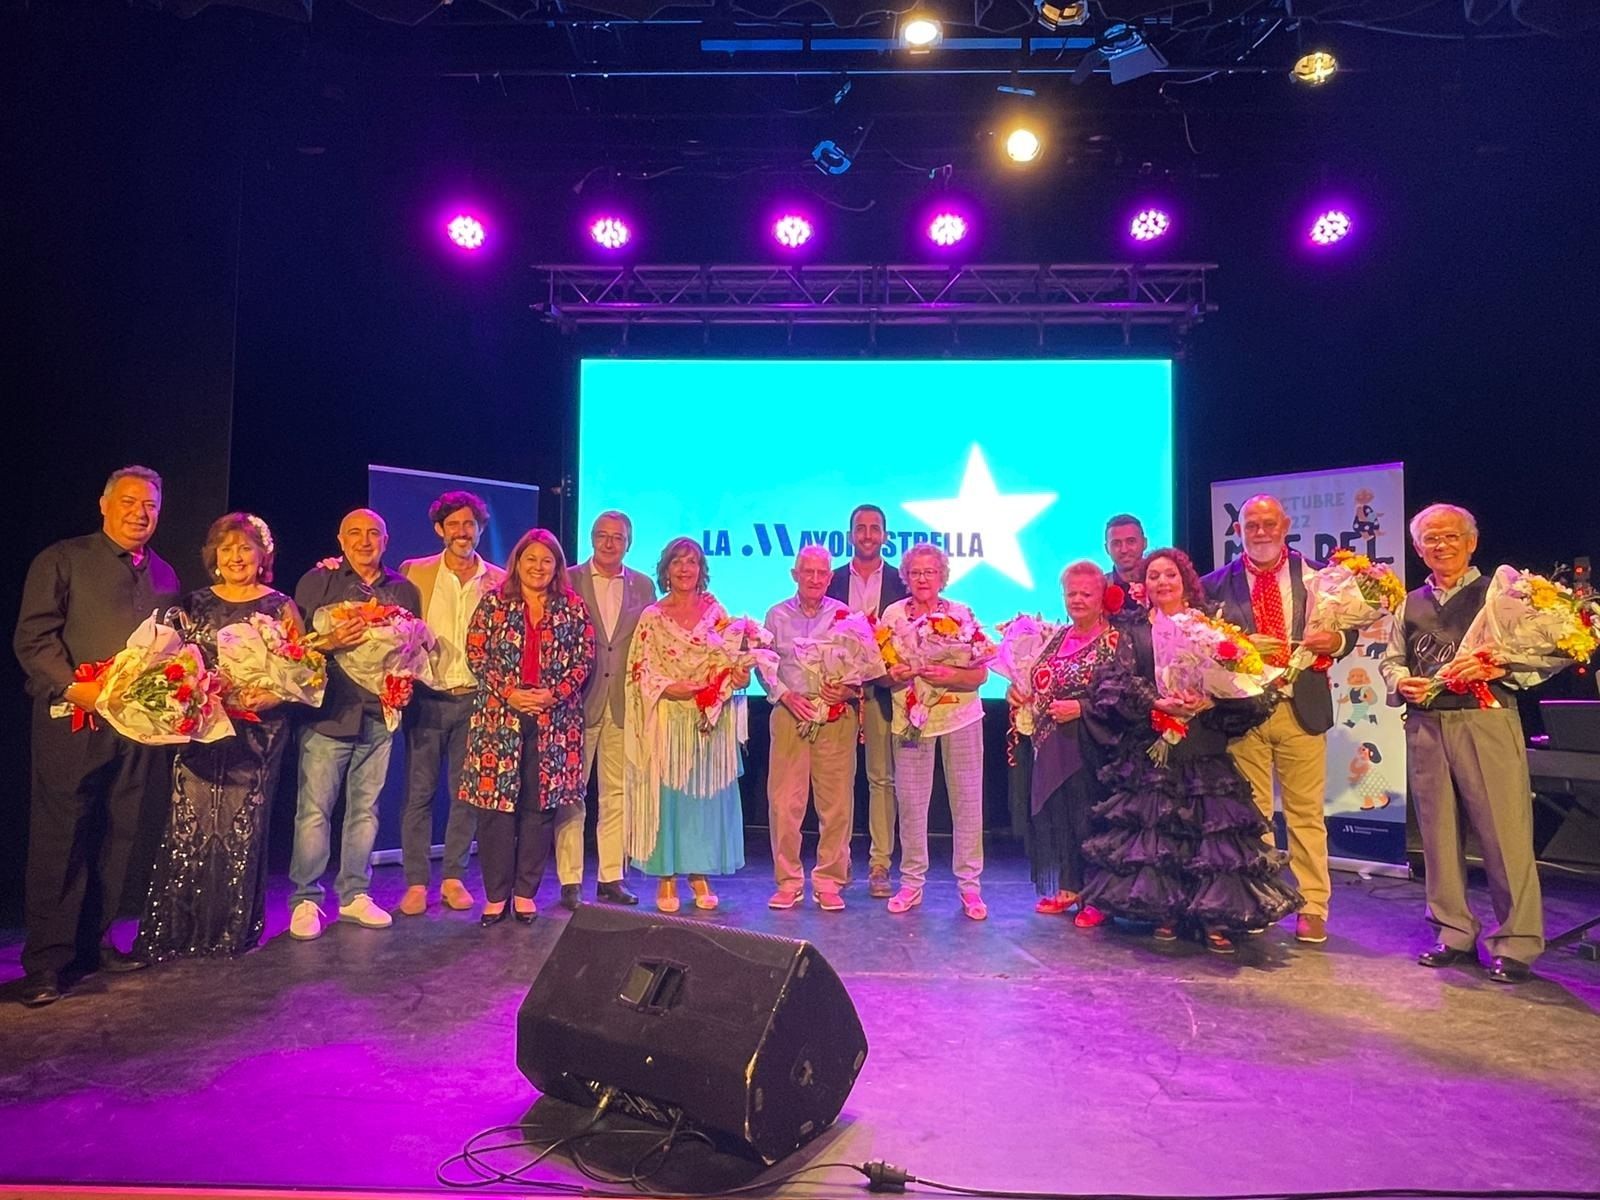 Málaga celebra la segunda edición de 'La mayor estrella', su concurso de talento para mayores